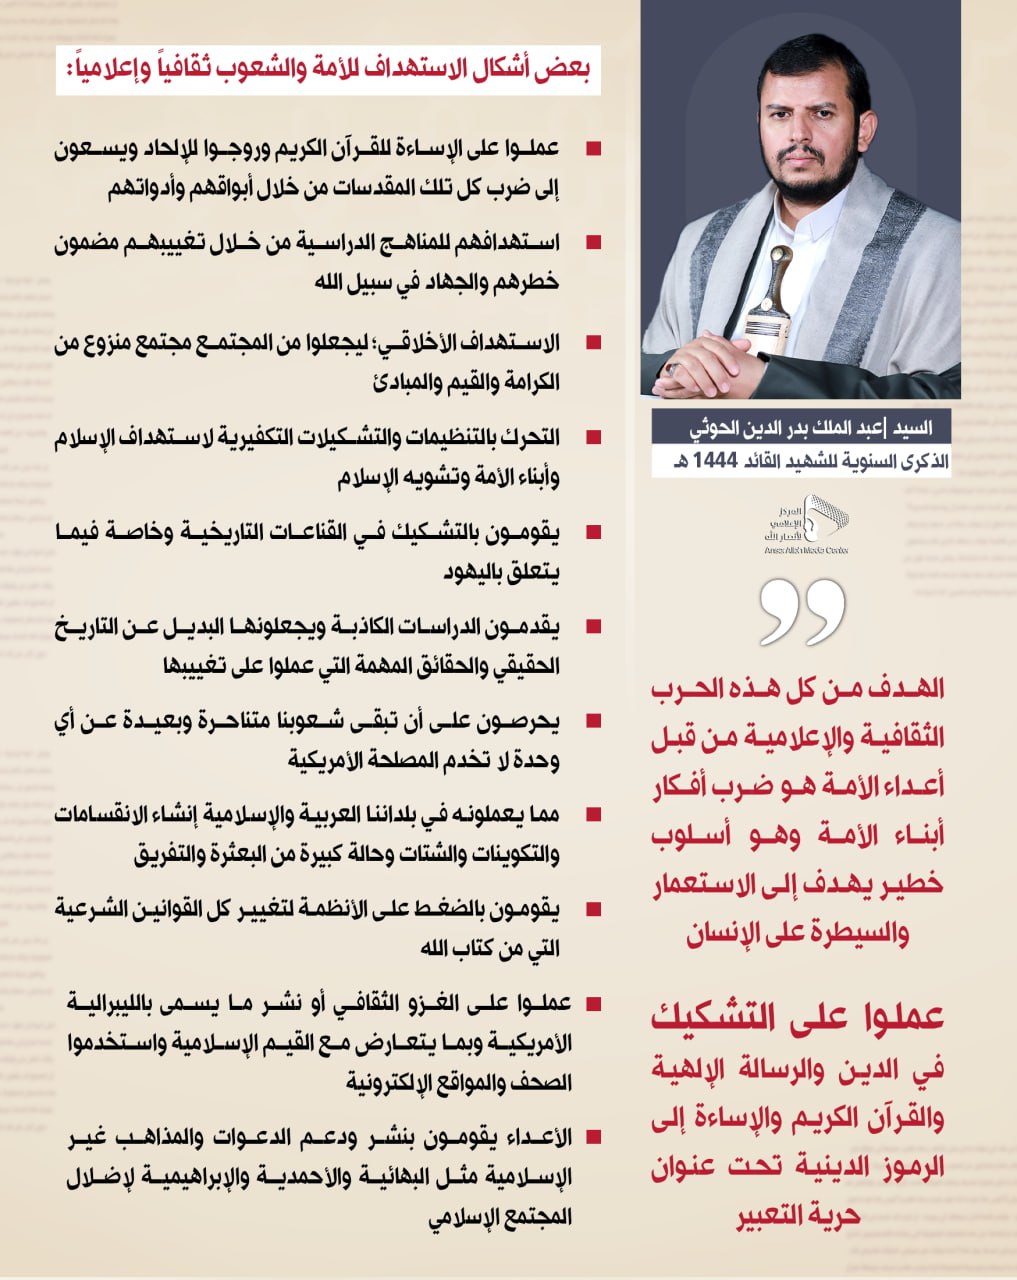 السيد عبدالملك بدر الدين الحوثي (17)